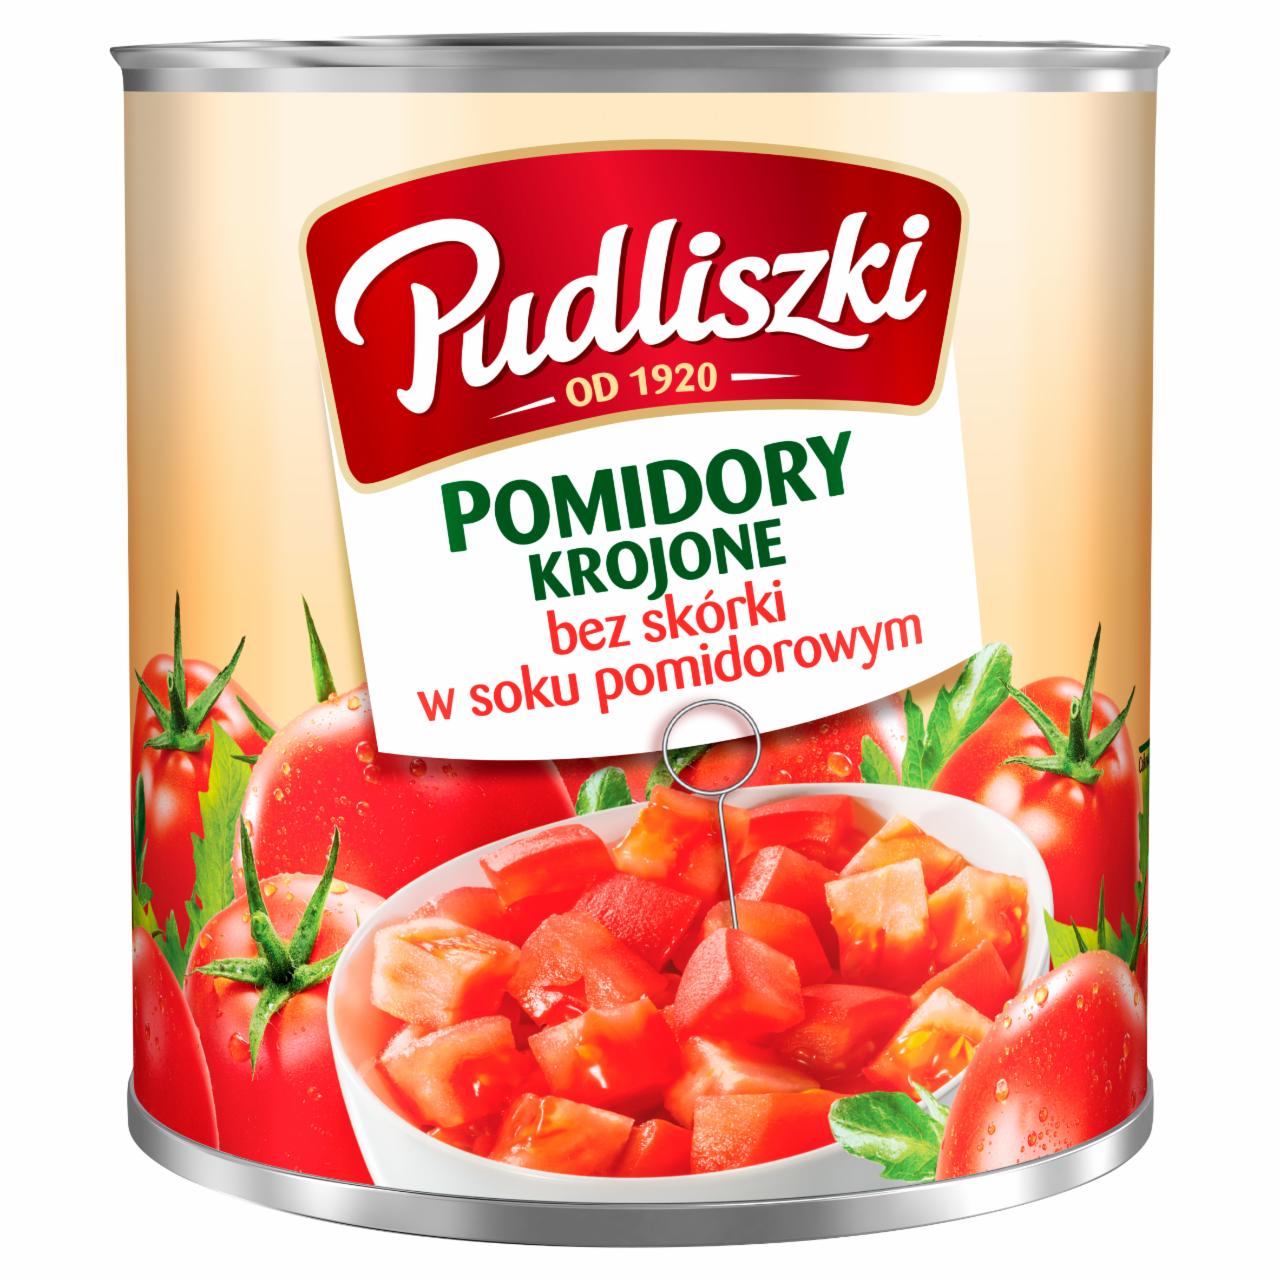 Zdjęcia - Pudliszki Pomidory krojone bez skórki w soku pomidorowym 2,52 kg